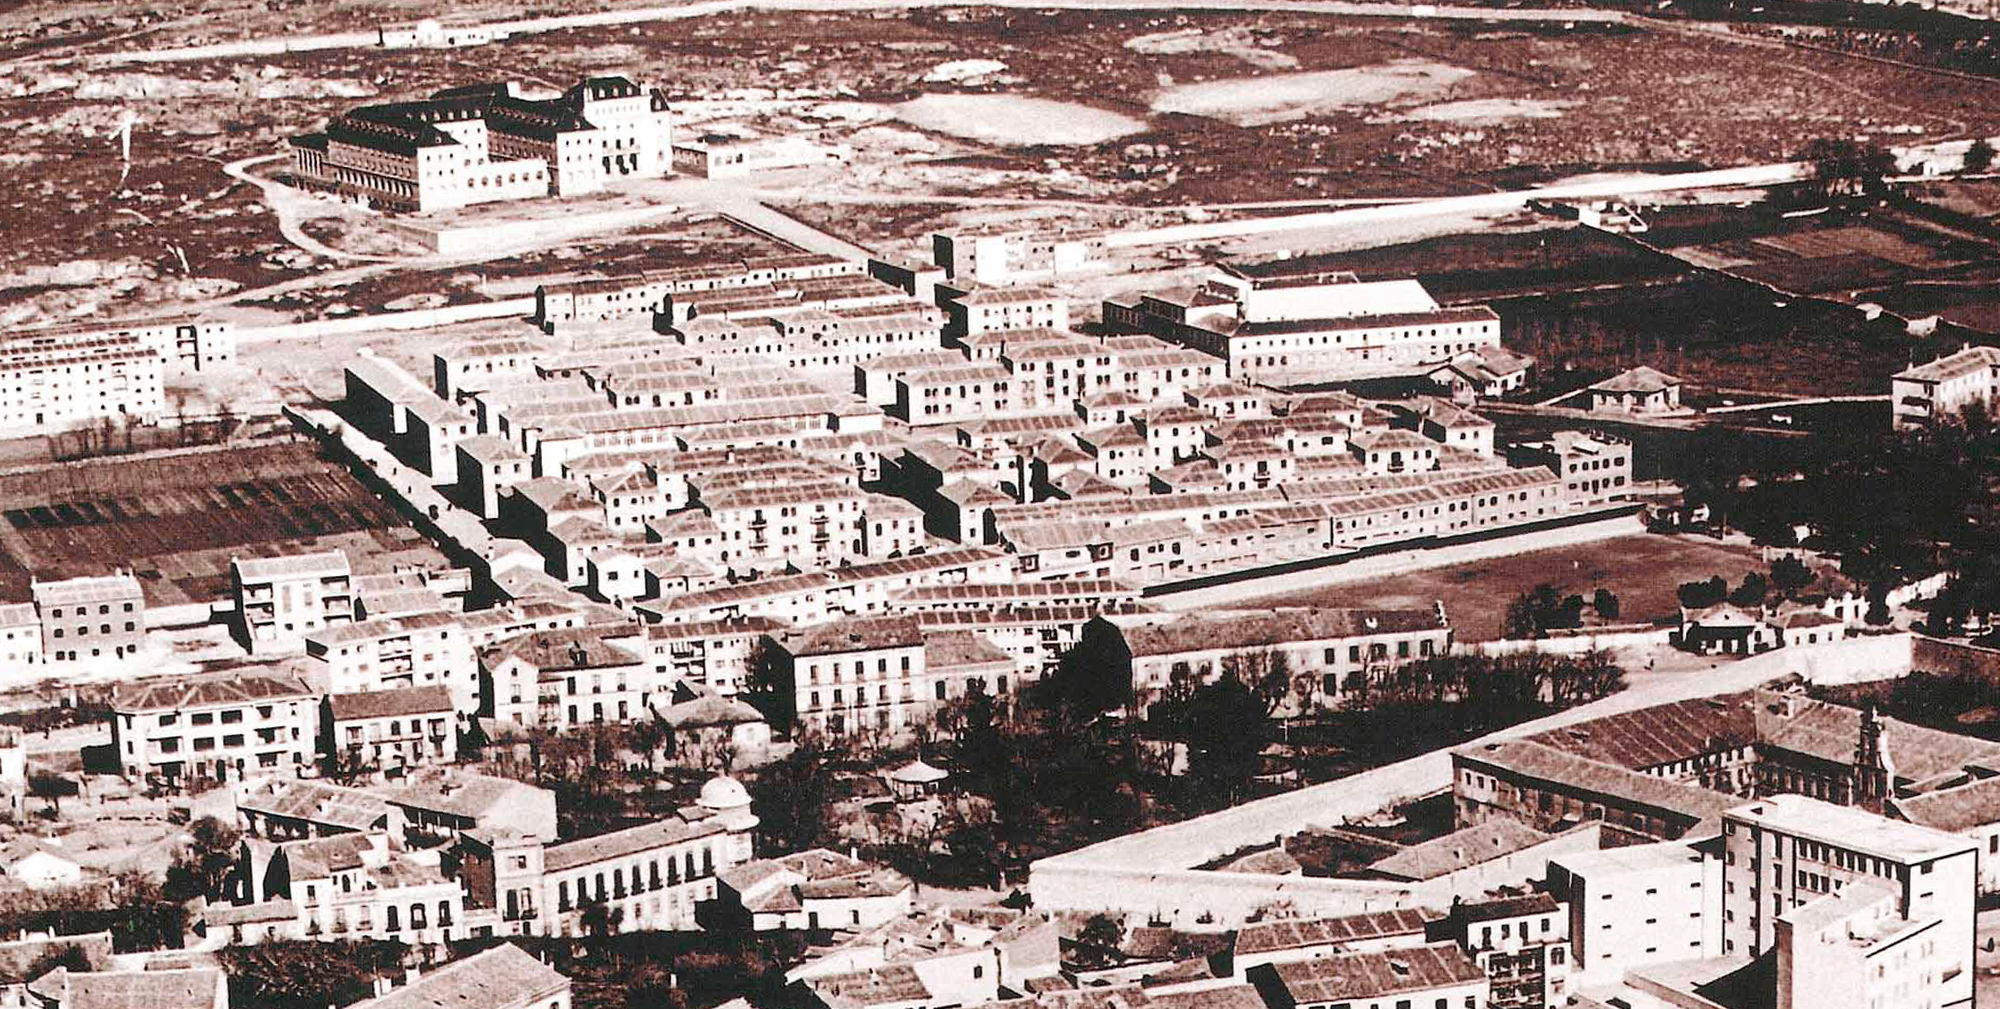 Más Ávila – ARU. Delimitación y planificación del Área de Regeneración Urbana (ARU) “La Cacharra - Seminario”